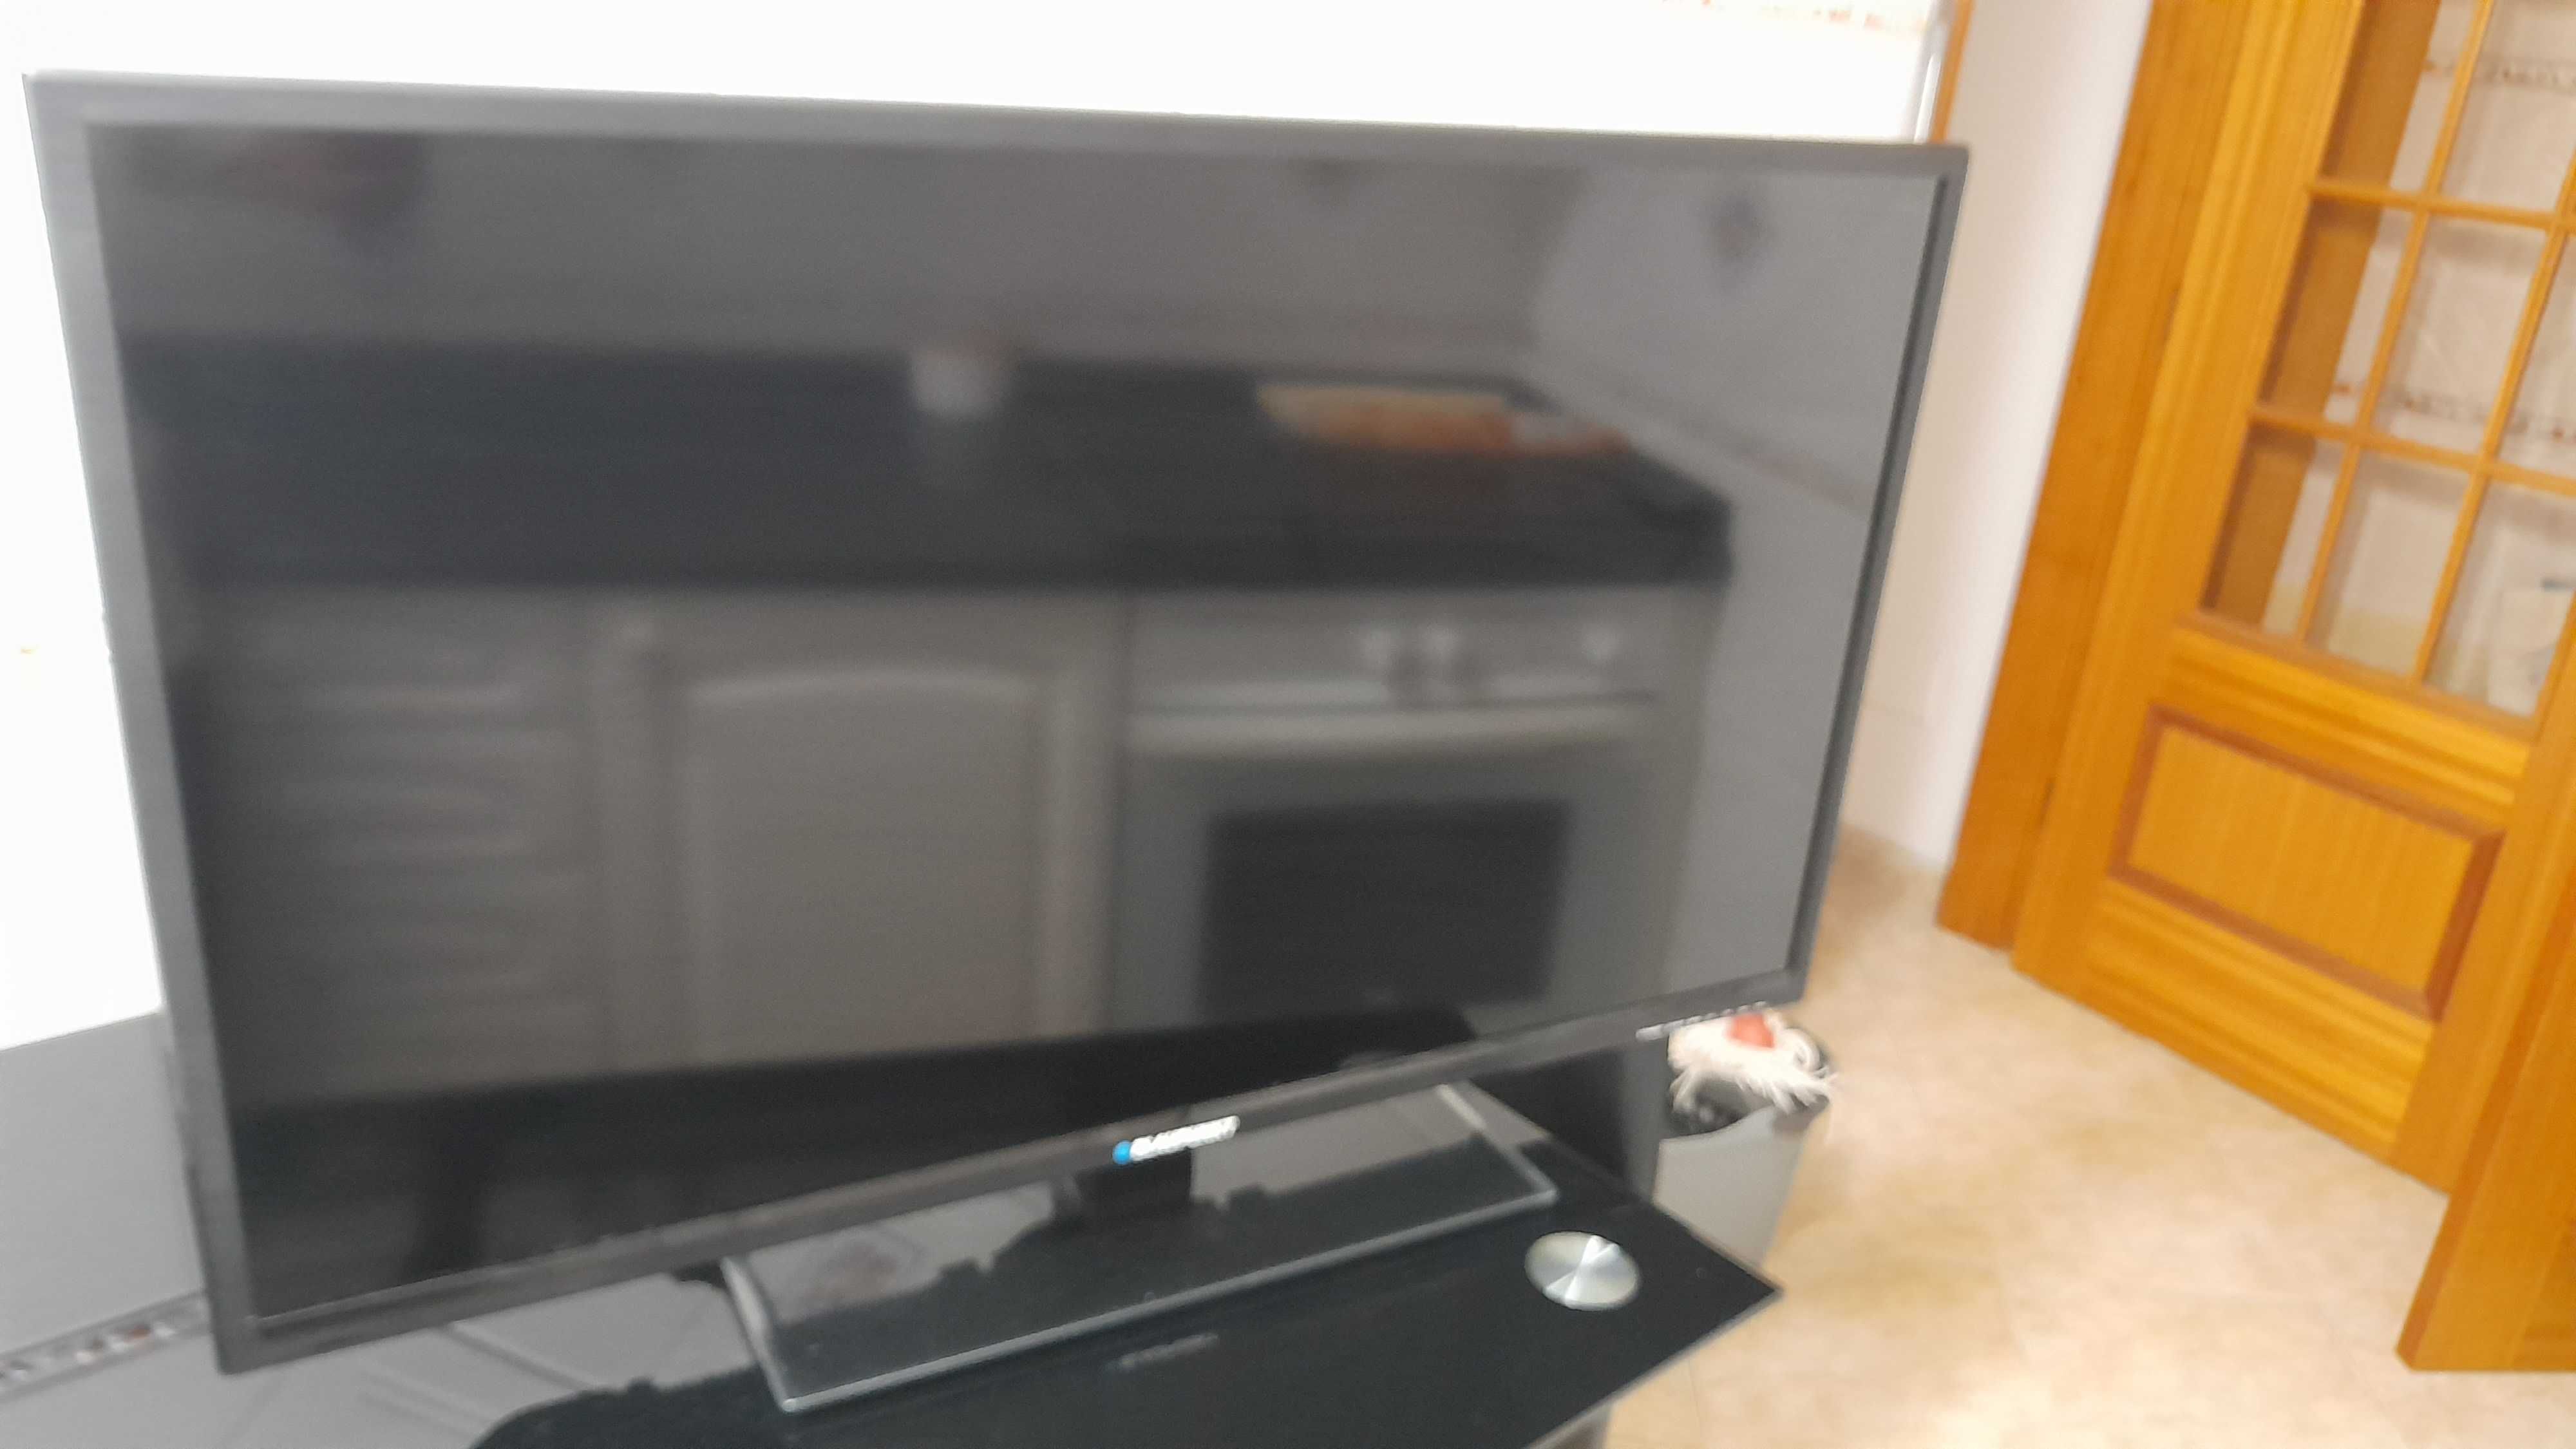 TV LED BLAUPUNKT4O polegadas com pouco uso com base em vidro temperado